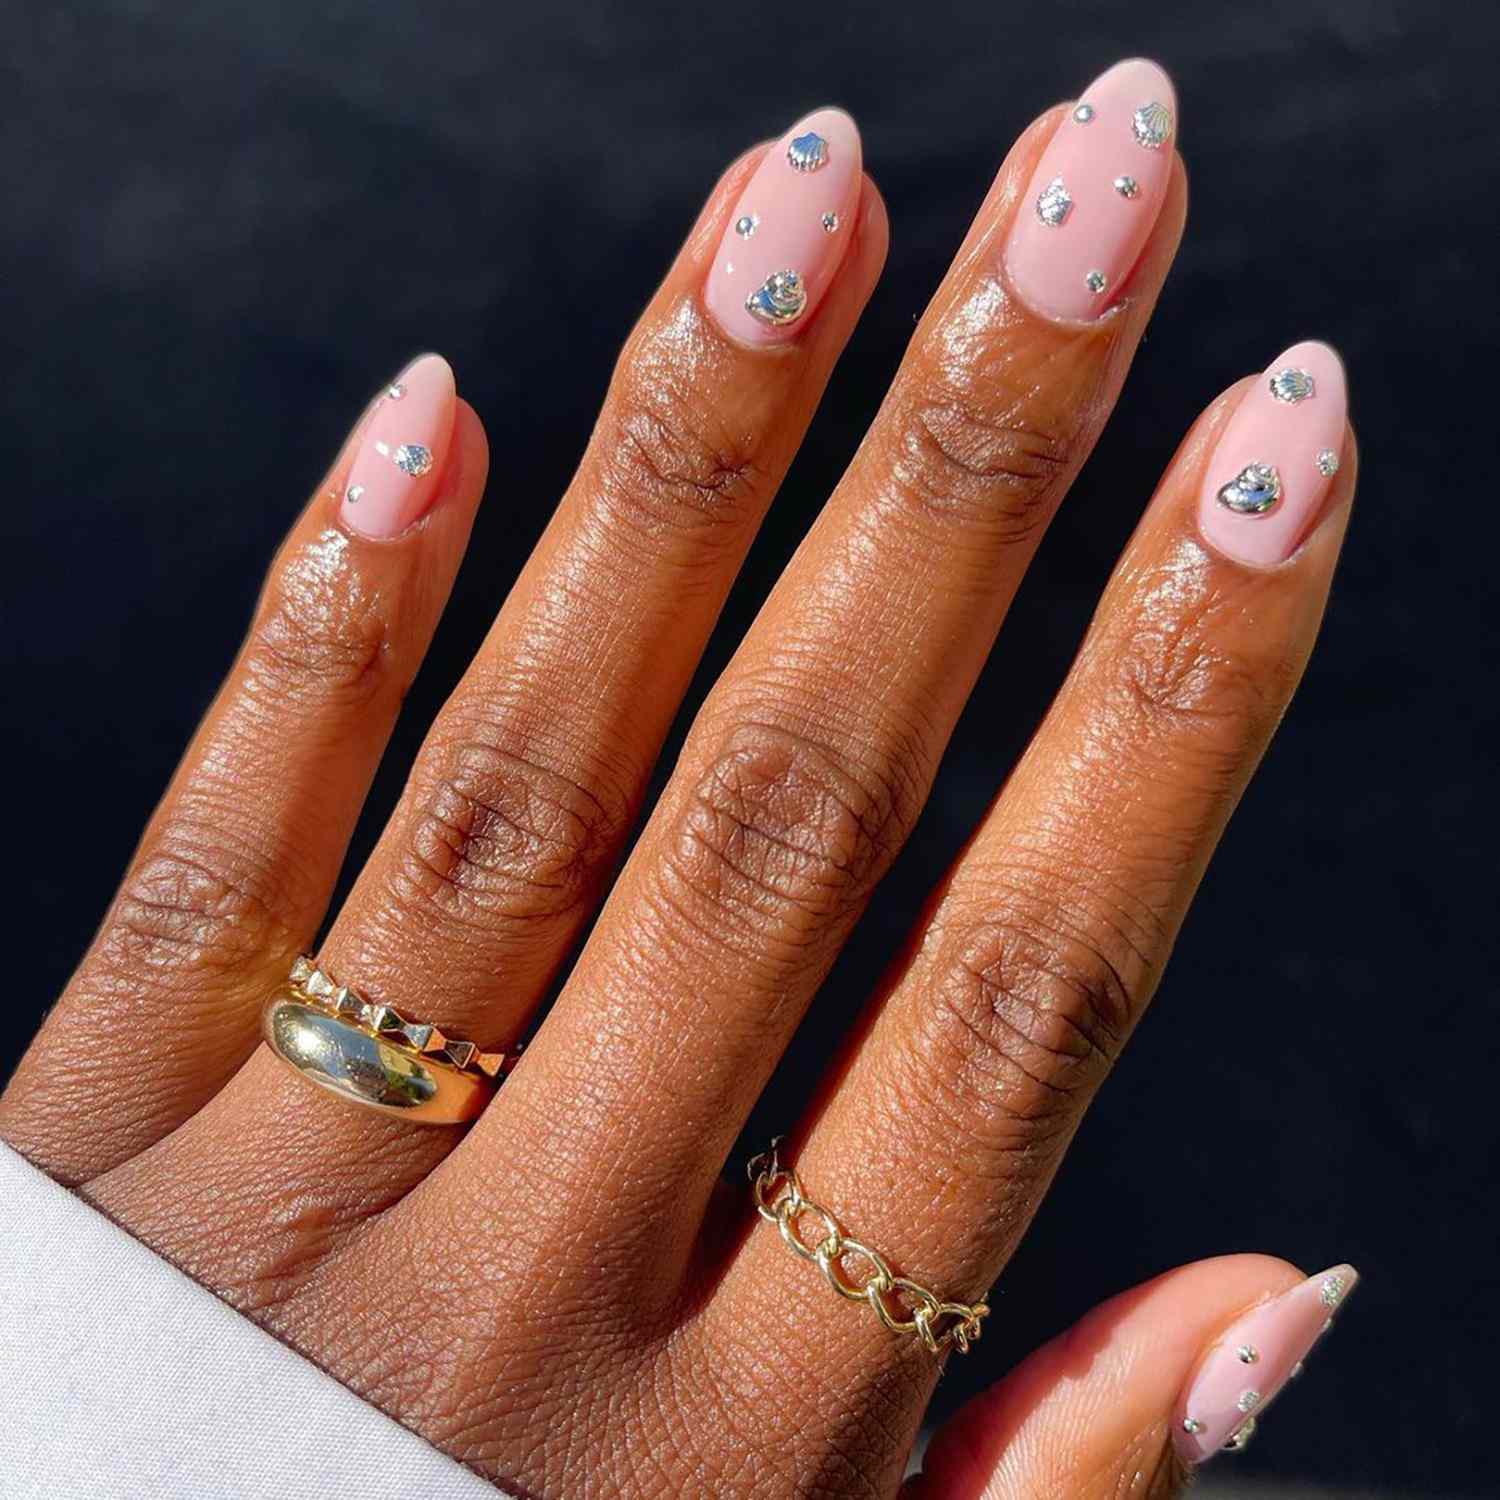 淡粉色的指甲上镶嵌着闪闪发光的宝石